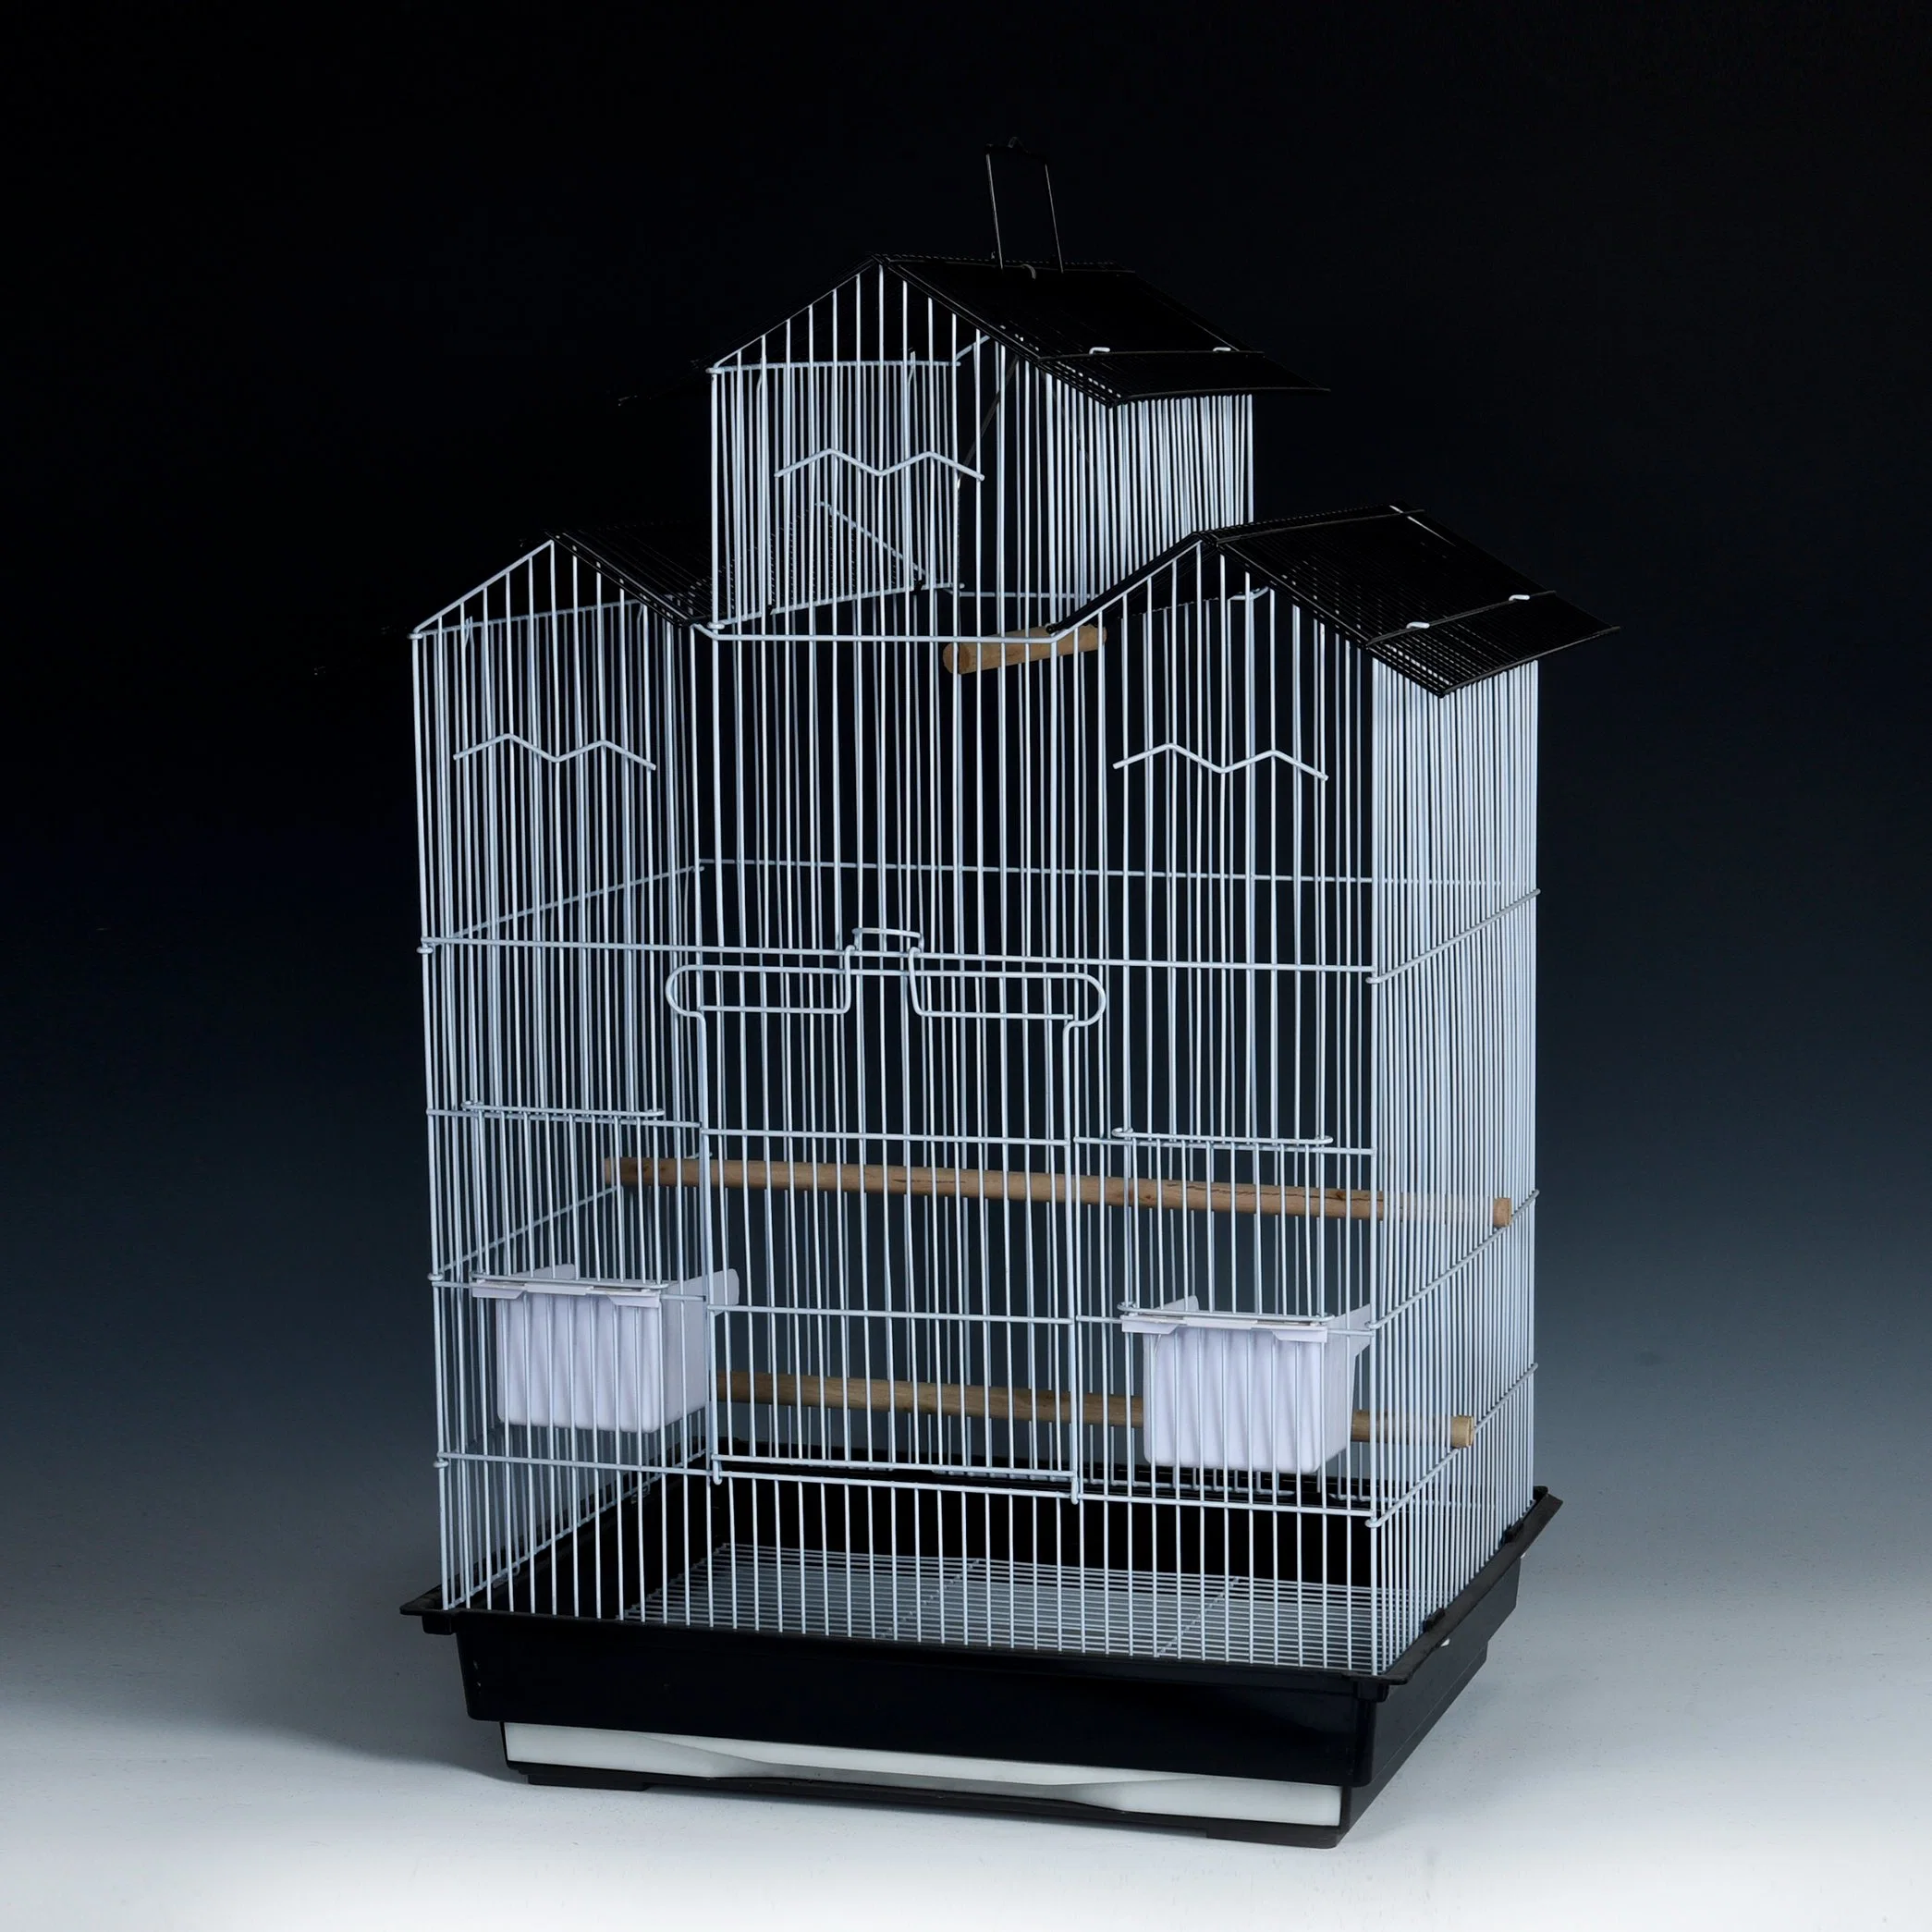 Amazon Top Demand Pet Supplies Parrot Cage House Product Cheap Bird Cages Pet Bird Cages Pet Accessories